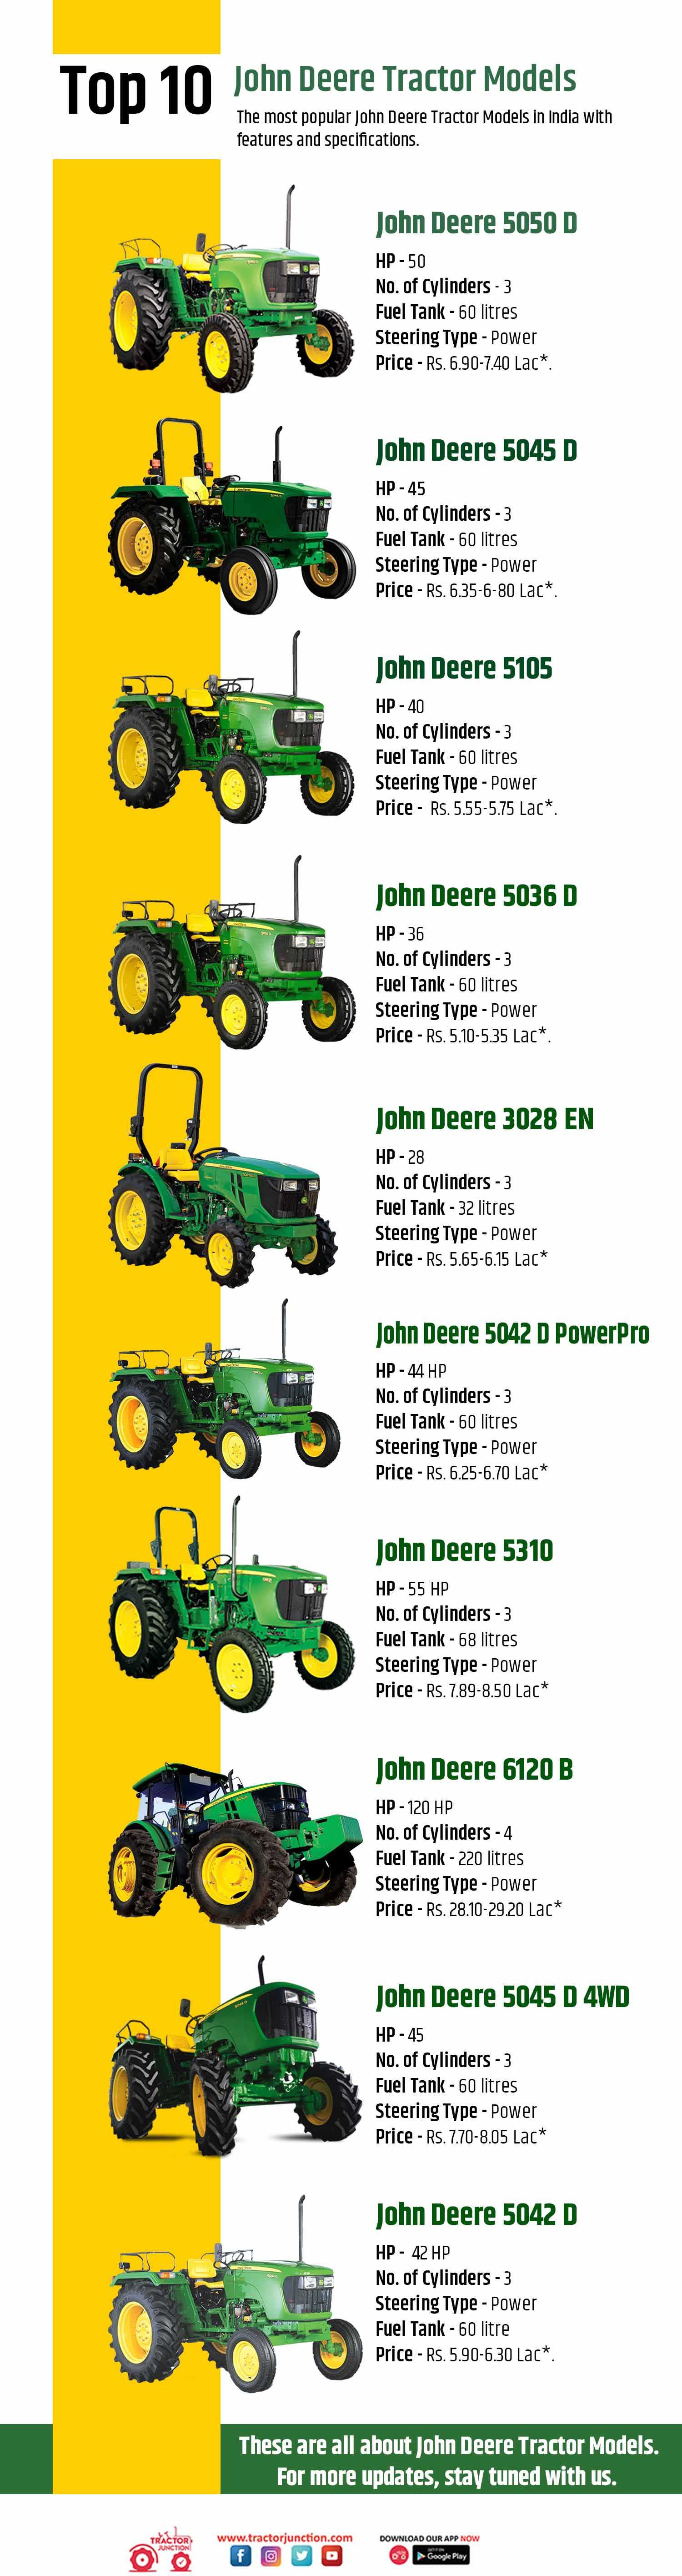 Top 10 John Deere Tractor Models - Infographic (2023)